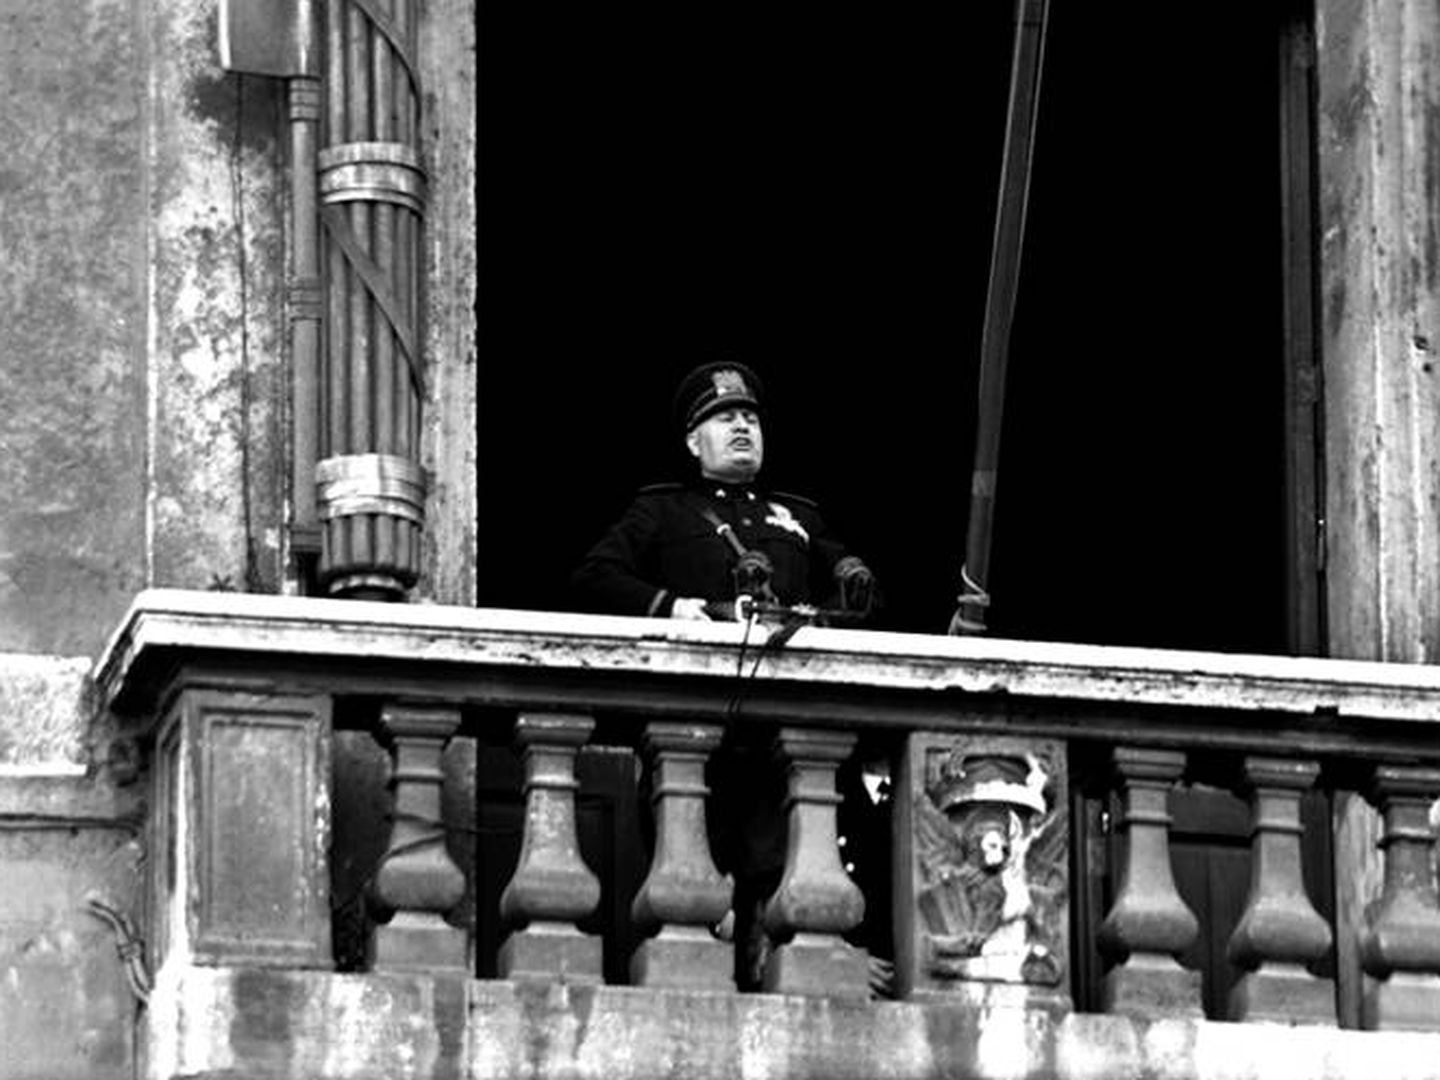 El 10 de junio de 1940 el Duce declaró la guerra a Francia y Gran Bretaña en el proverbial balcón de piazza Venezia